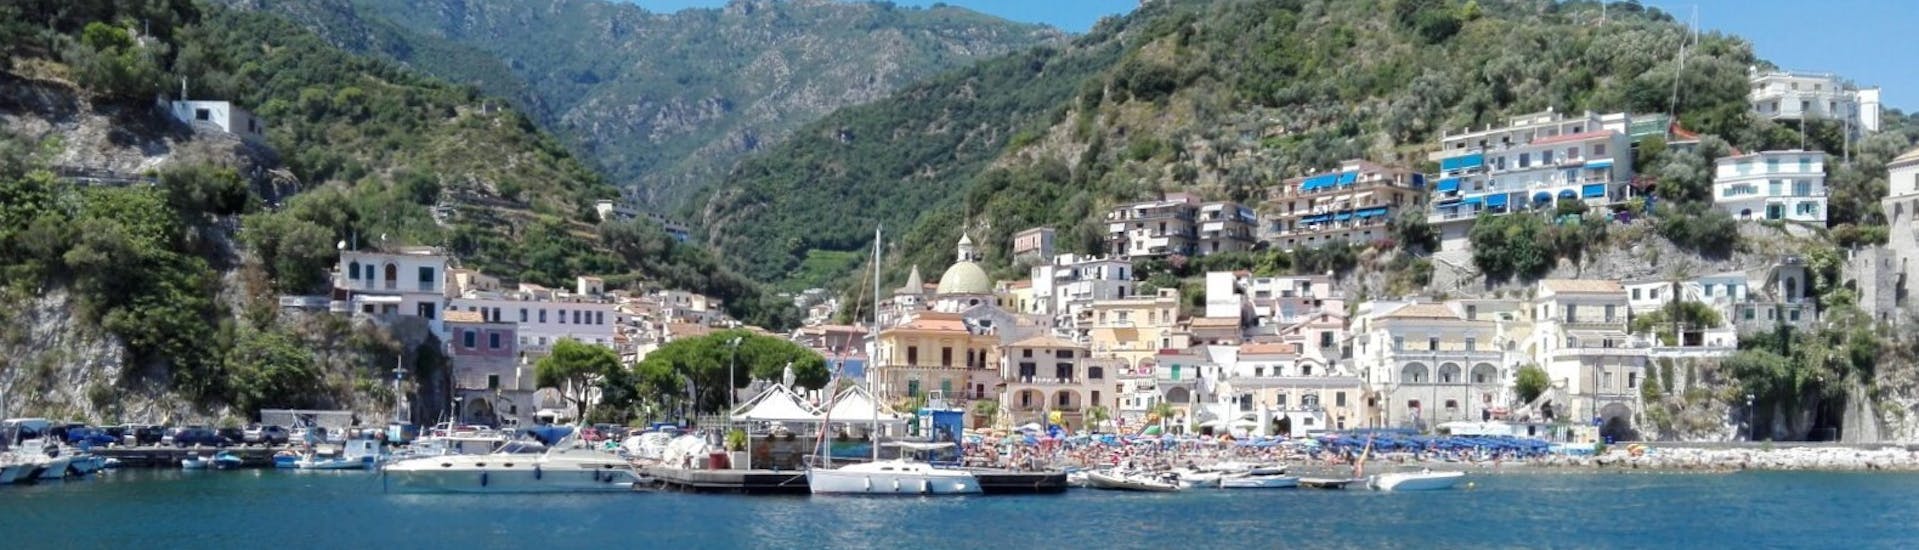 De kust van Sorrento gezien vanaf de boot tijdens de Privé Boottocht van Sorrento naar Positano met Apéritif & Snorkelen met The Morgans.